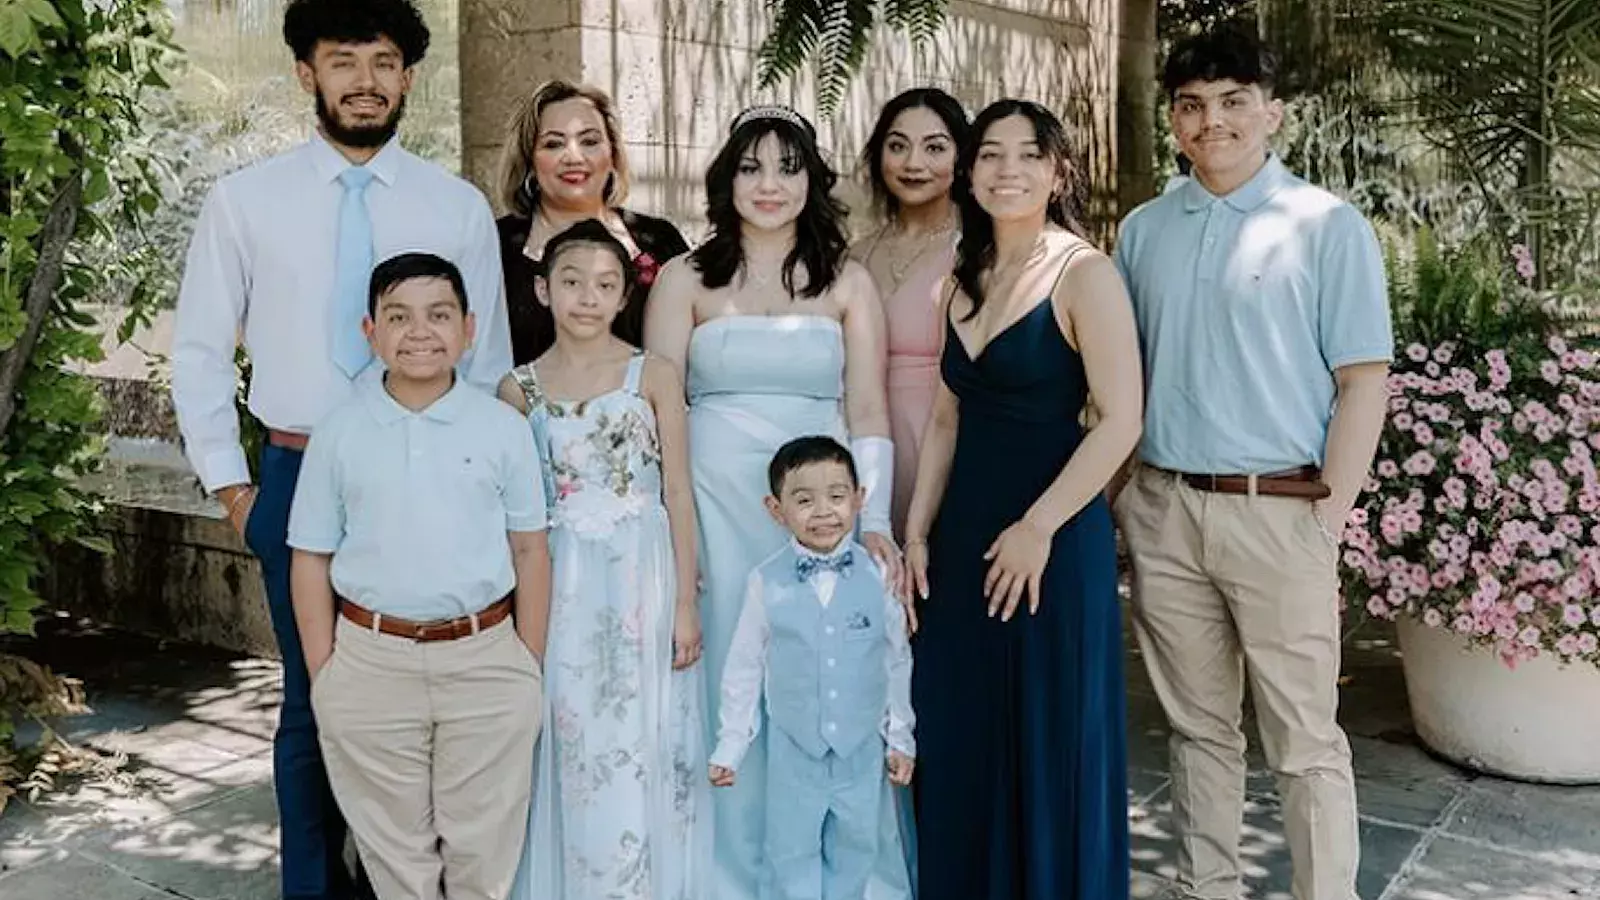 Conmoción por muerte de mujer hispana en un accidente en EEUU; dejó 8 hijos huérfanos